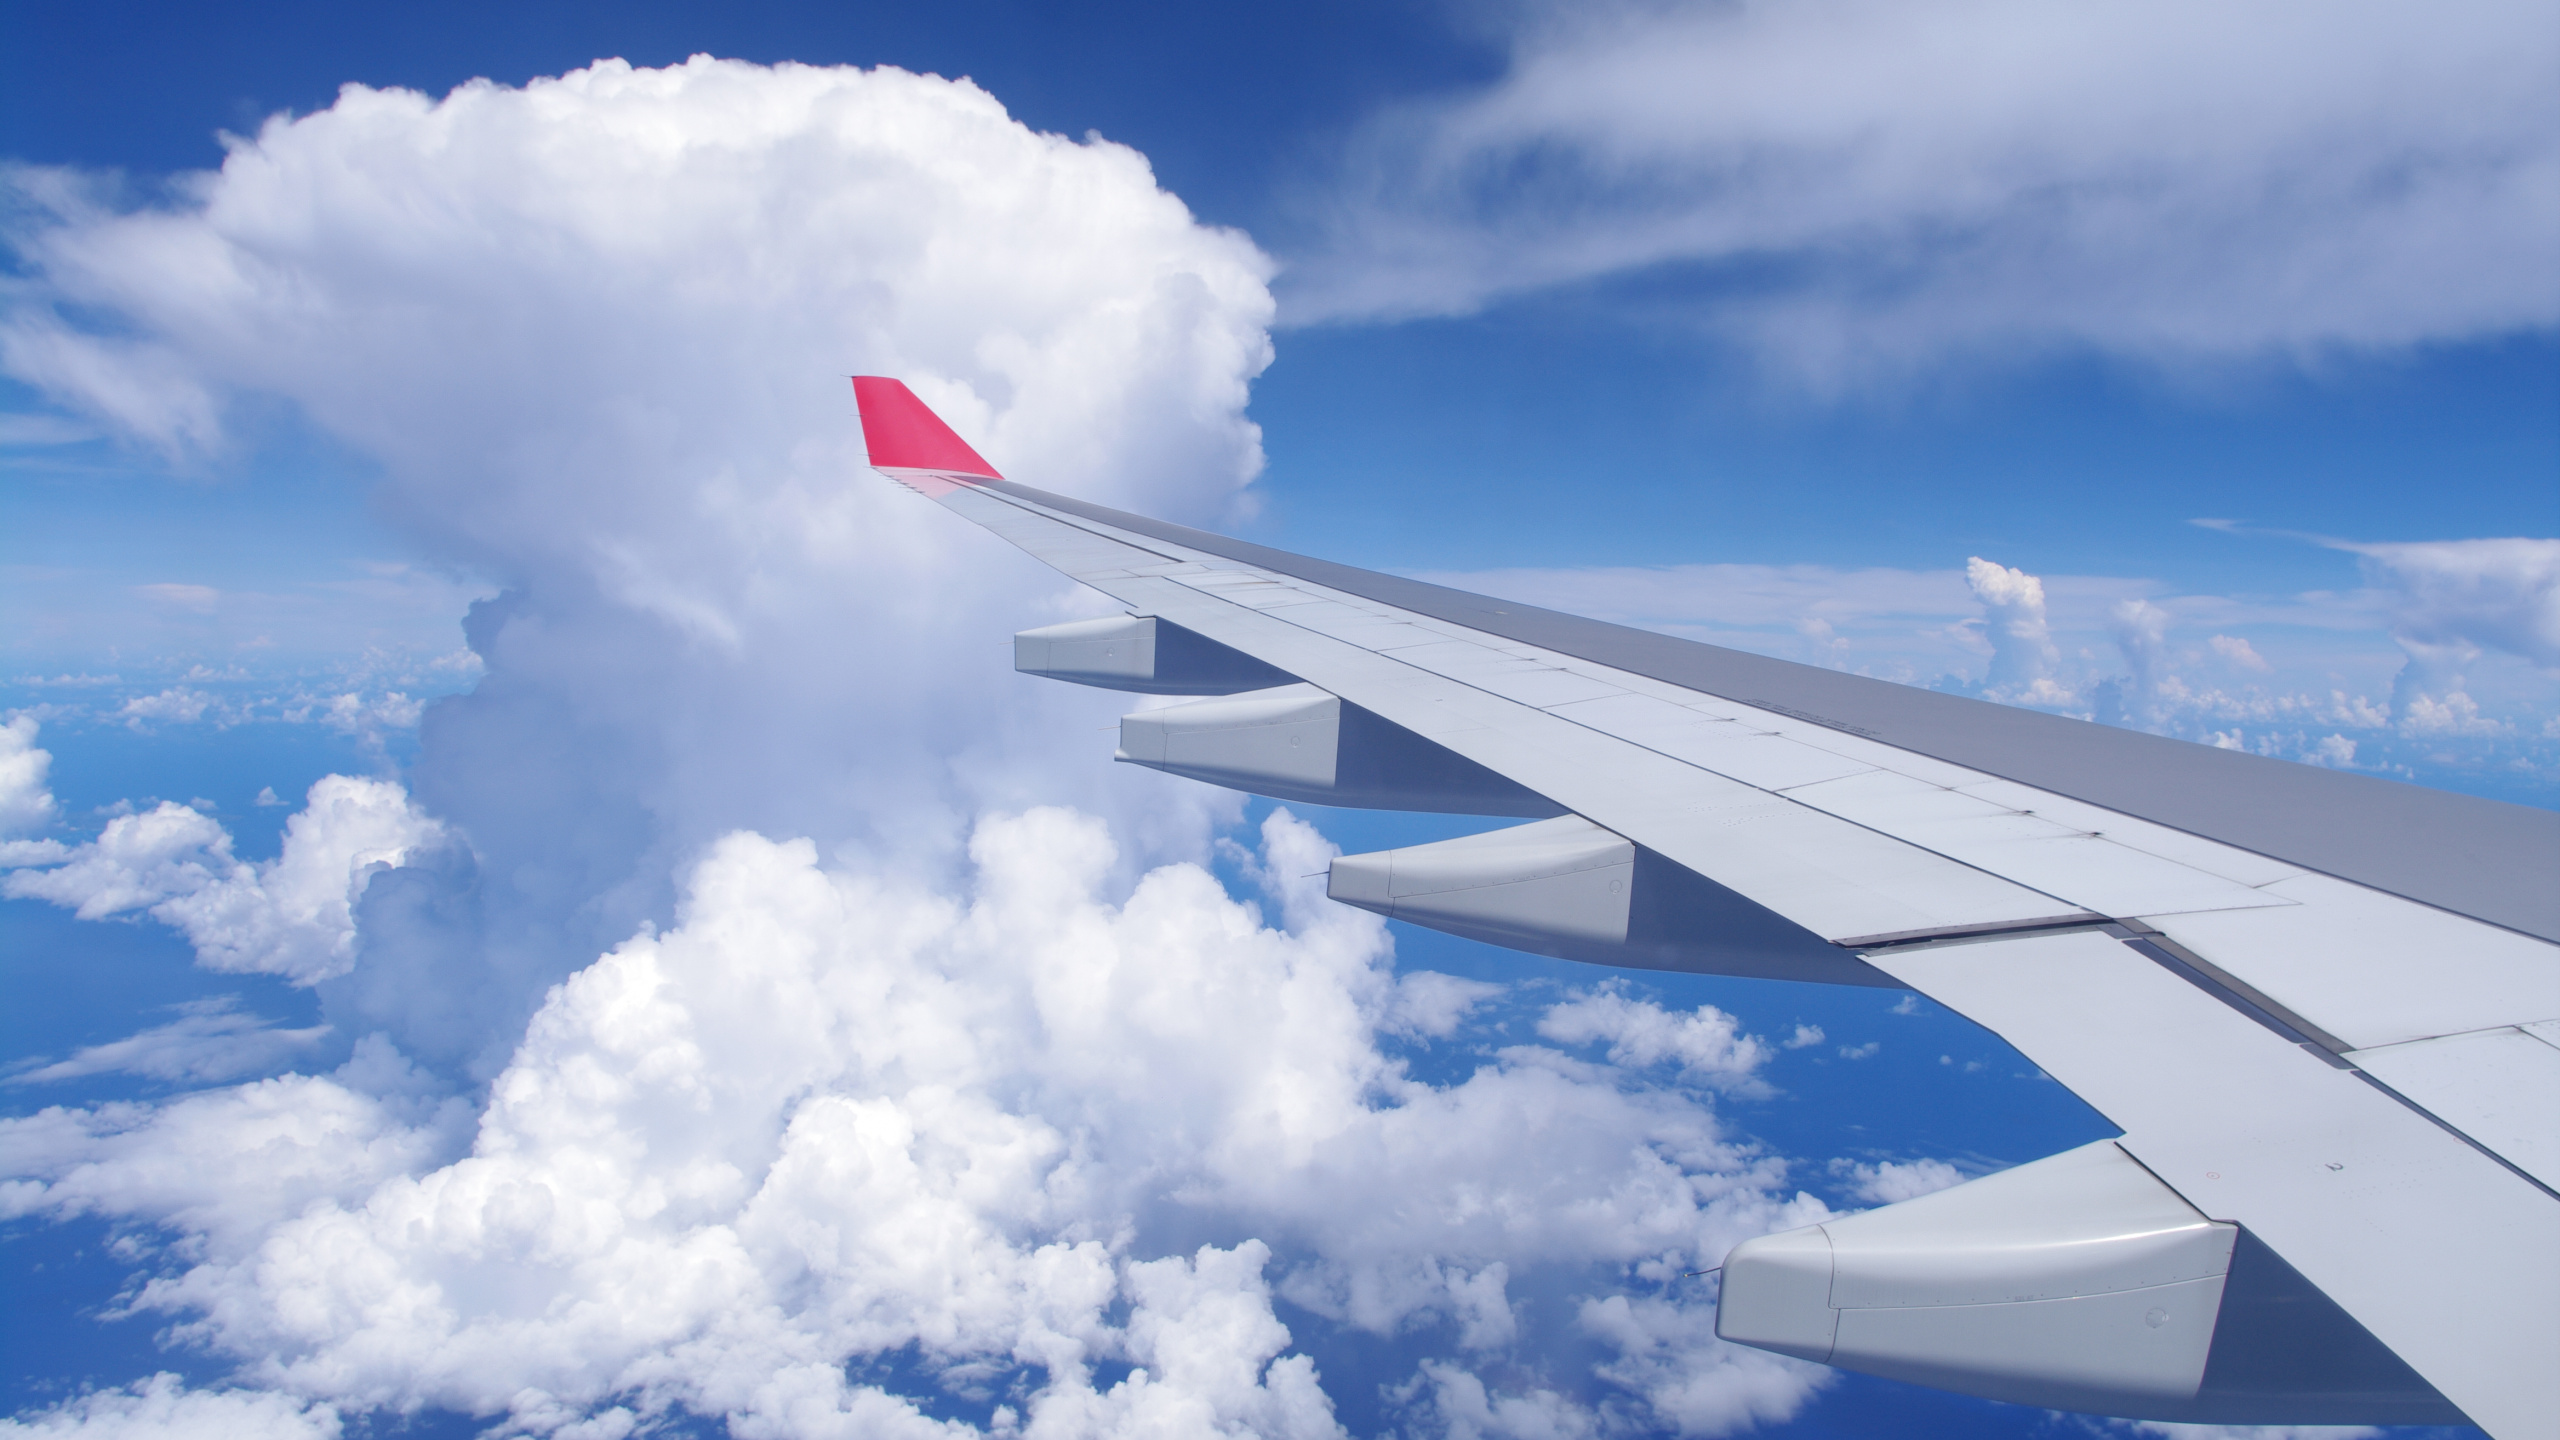 航班, 空中旅行, 翼, 航空, 航空公司 壁纸 2560x1440 允许